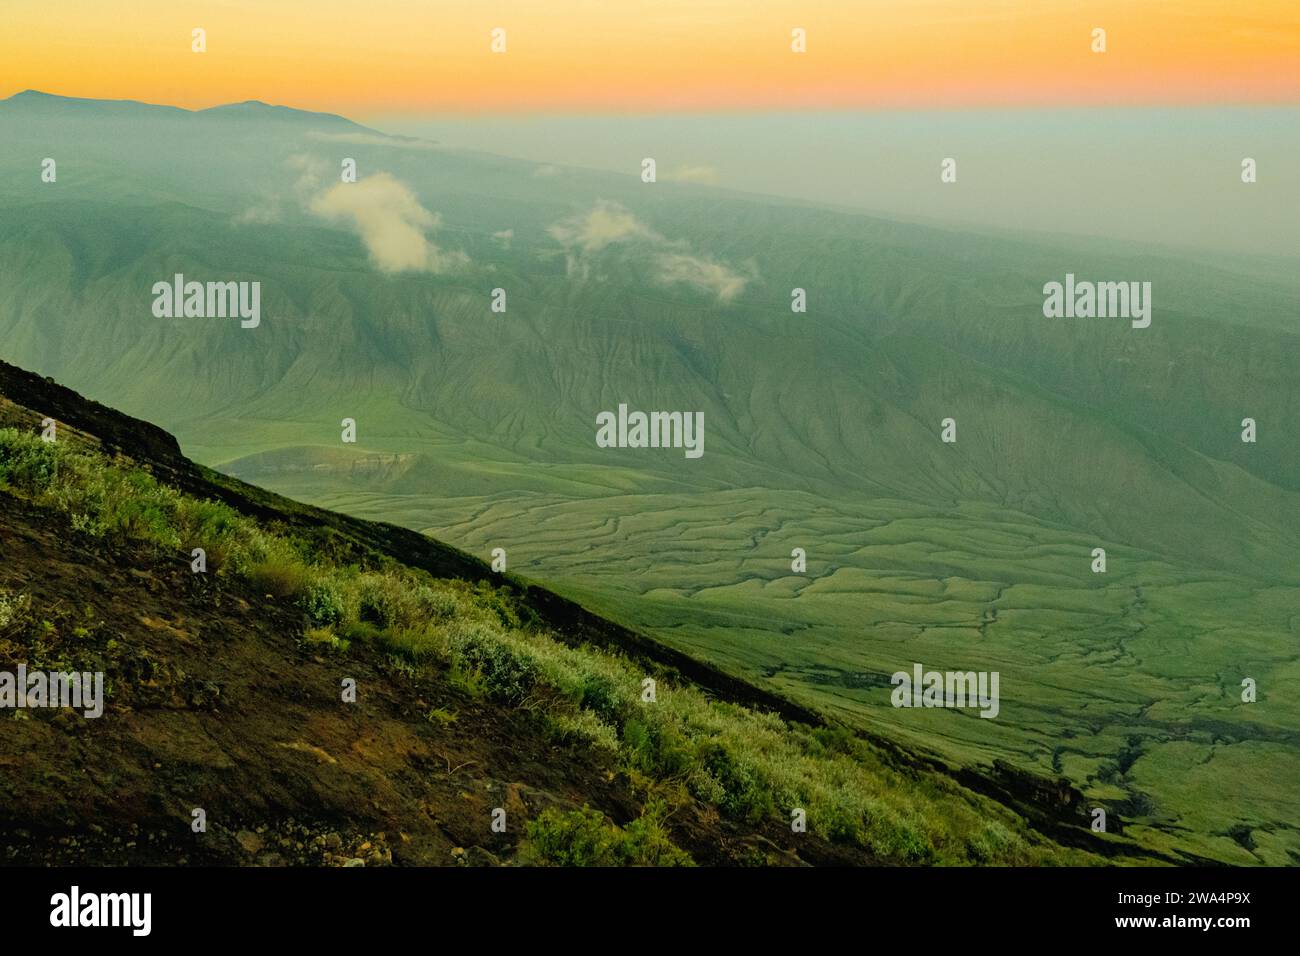 Vue des formations rocheuses volcaniques de la vallée du Rift depuis le mont OL Doinyo Lengai en Tanzanie Banque D'Images